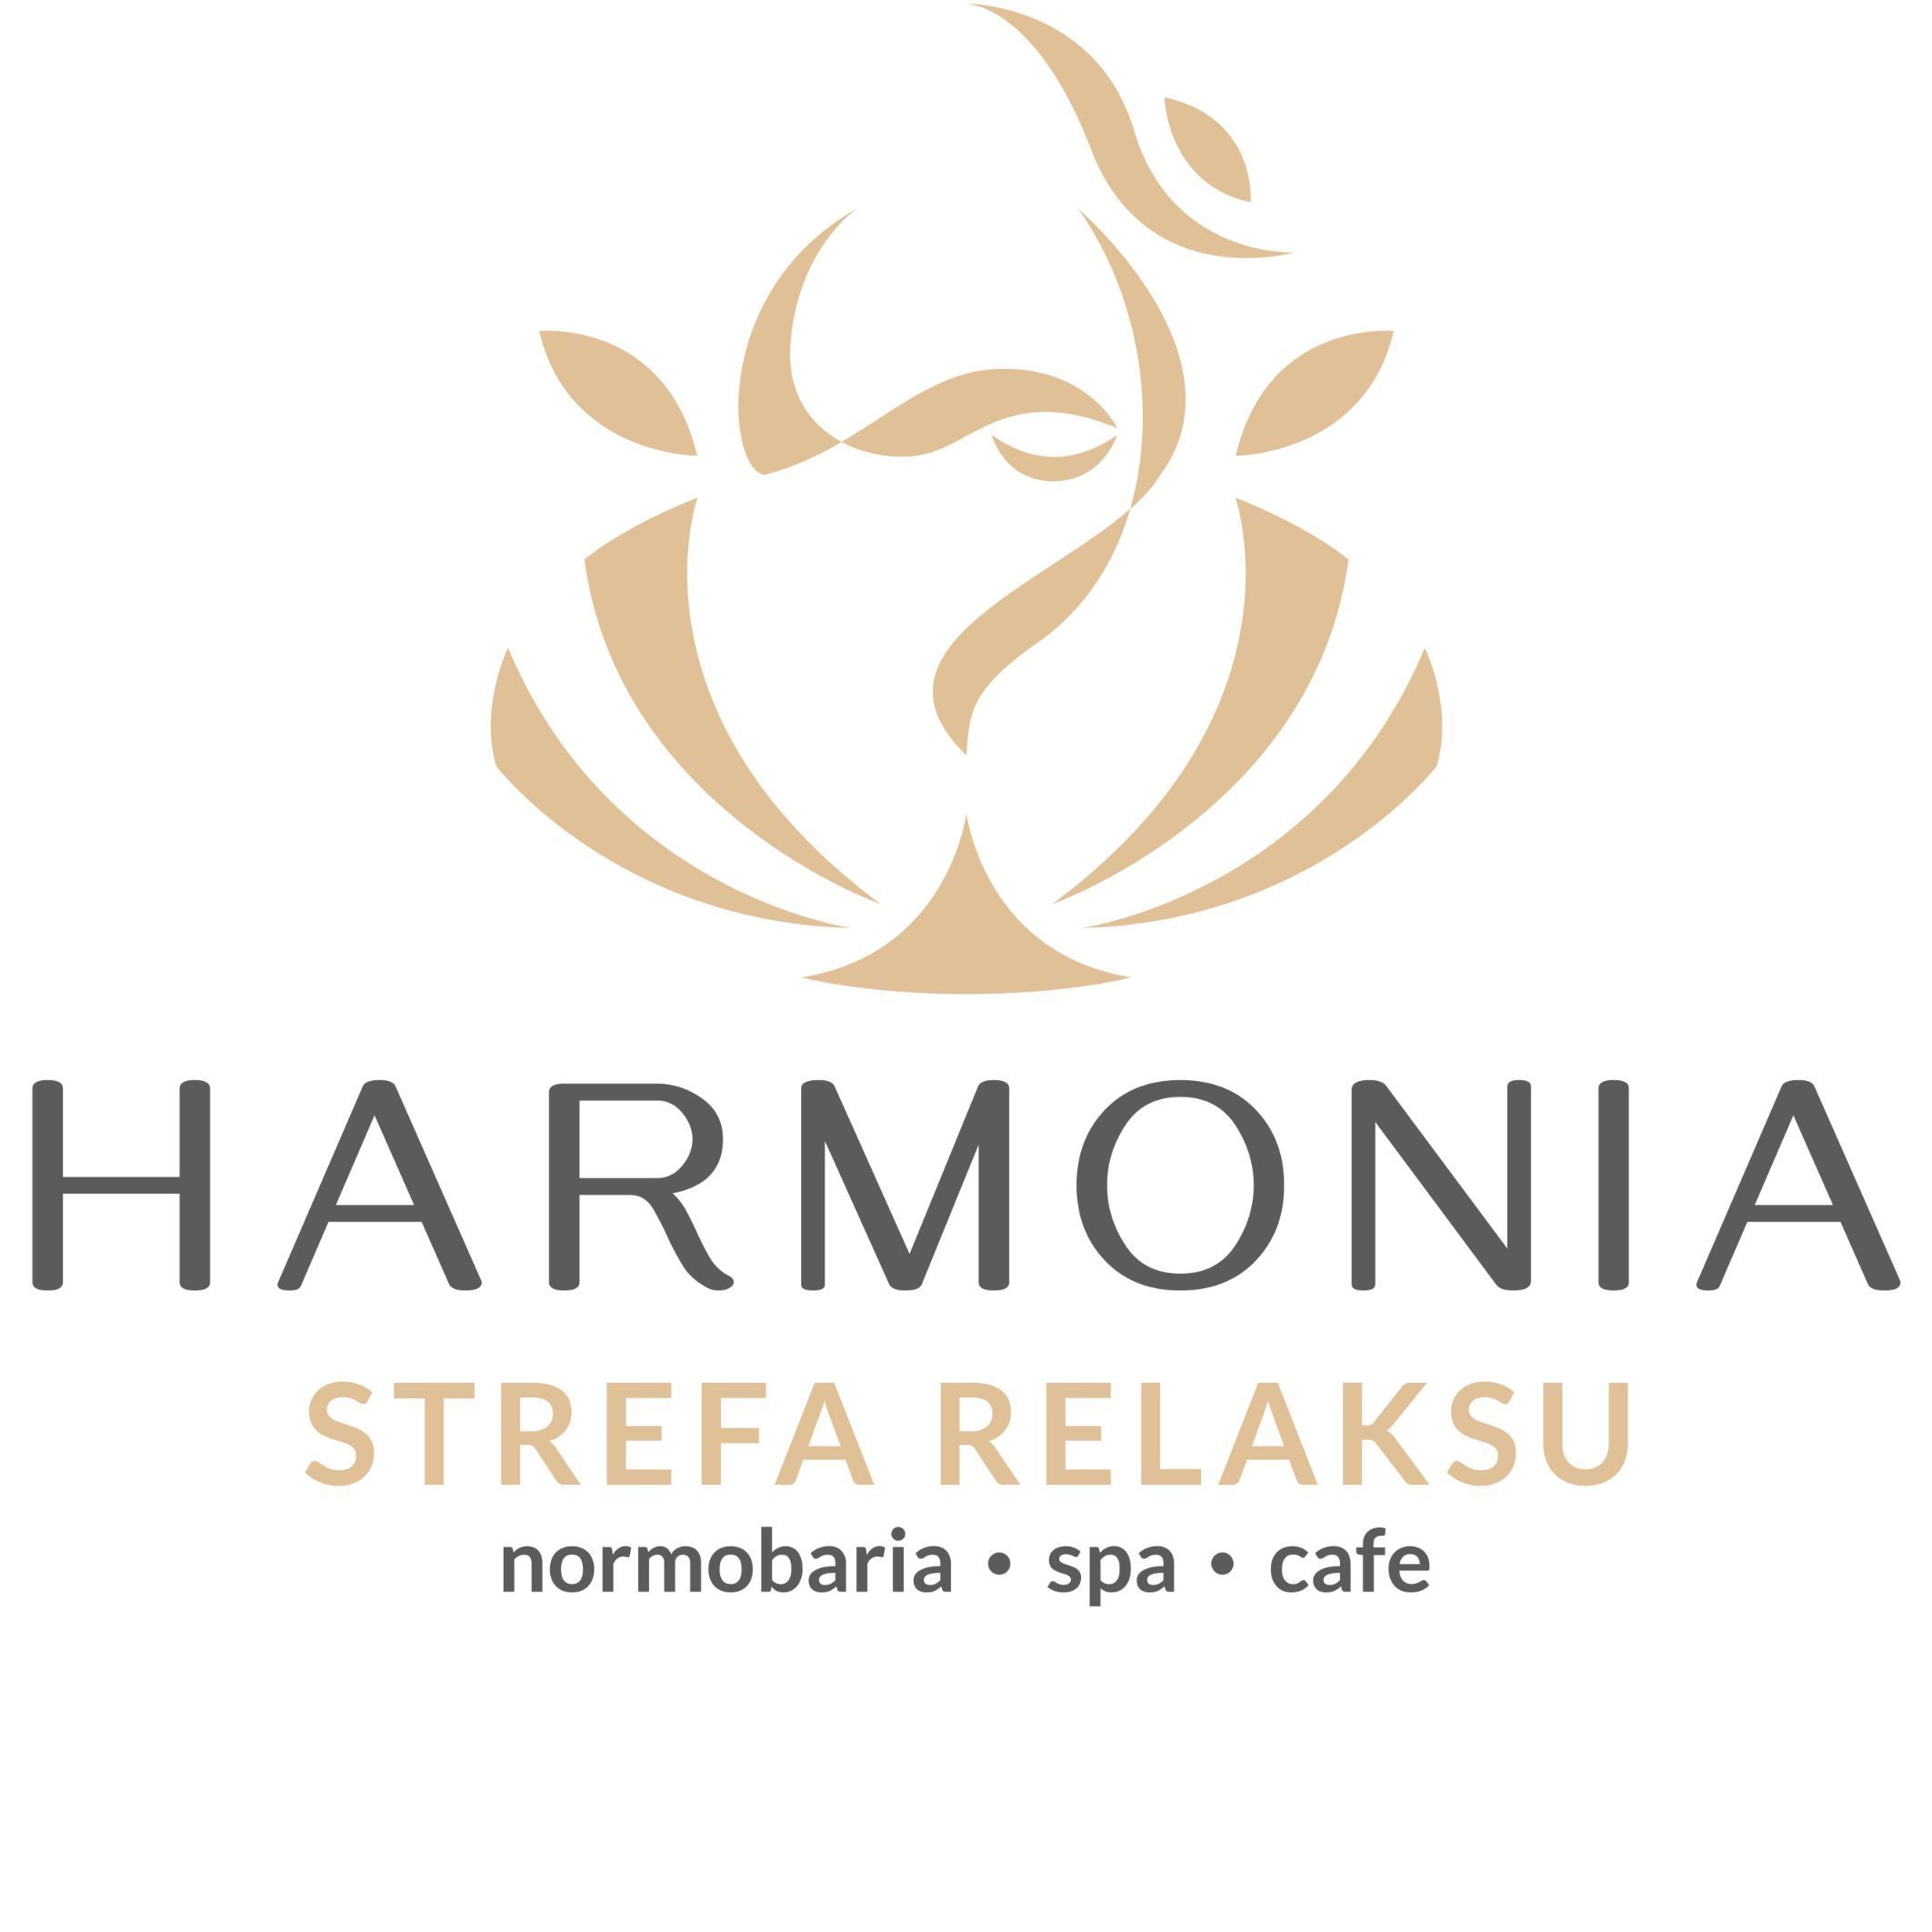 Harmonia Strefa Relaksu, Orzechowa 2B, 48-300, Nysa